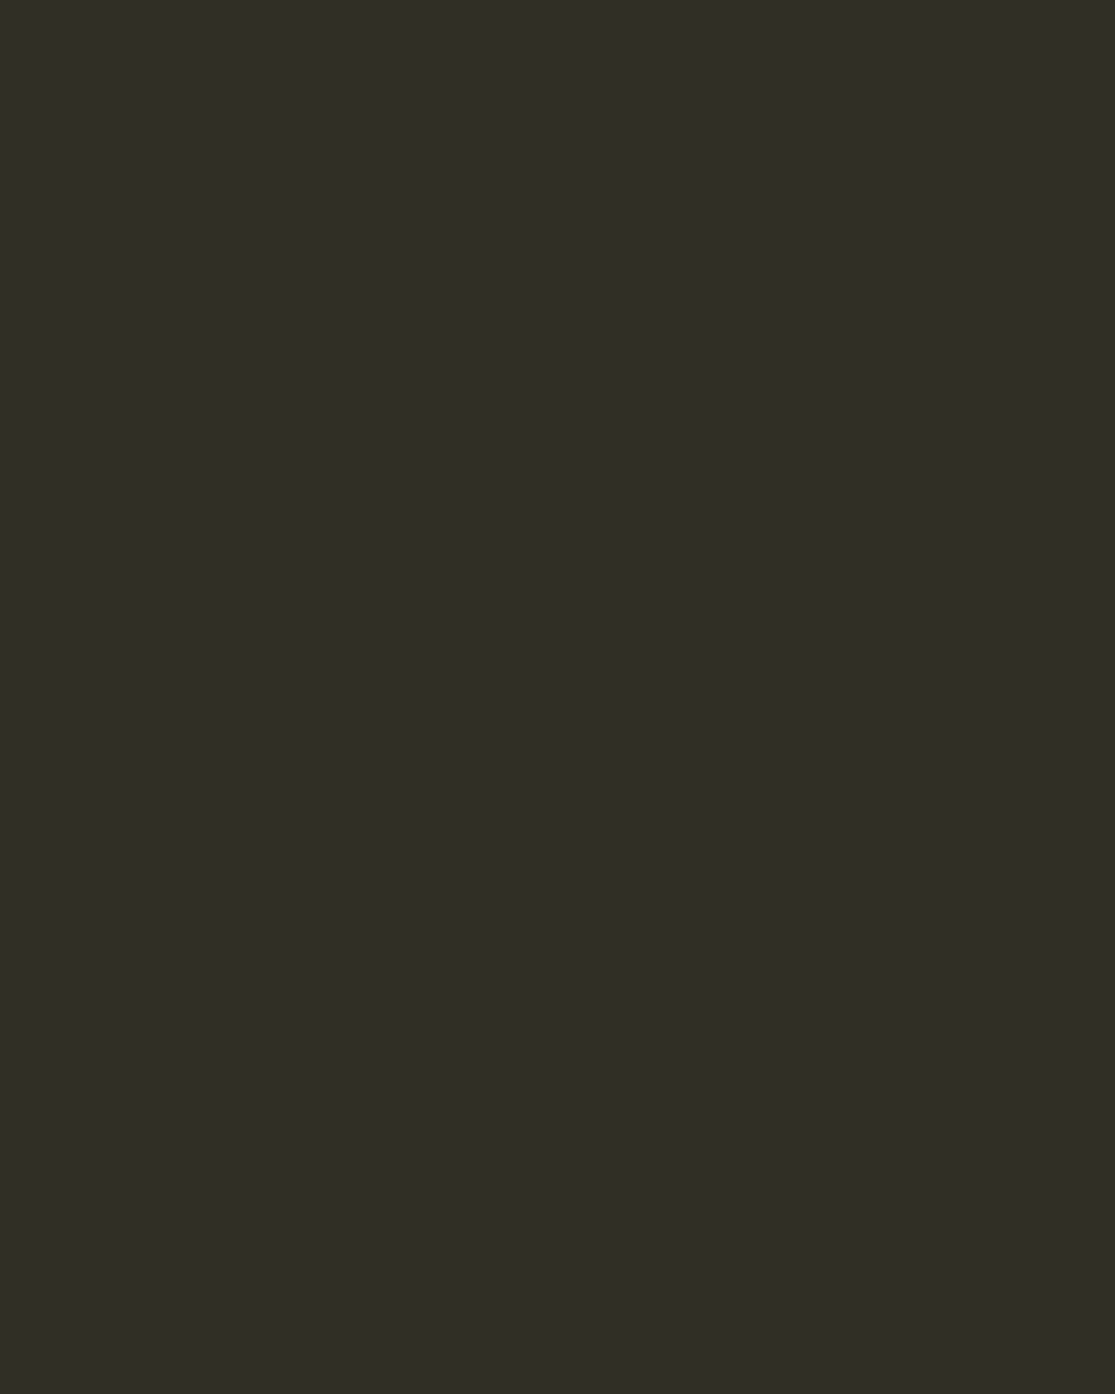 Степан Александровский. Портрет Федора Тютчева. 1876. Государственная Третьяковская галерея, Москва